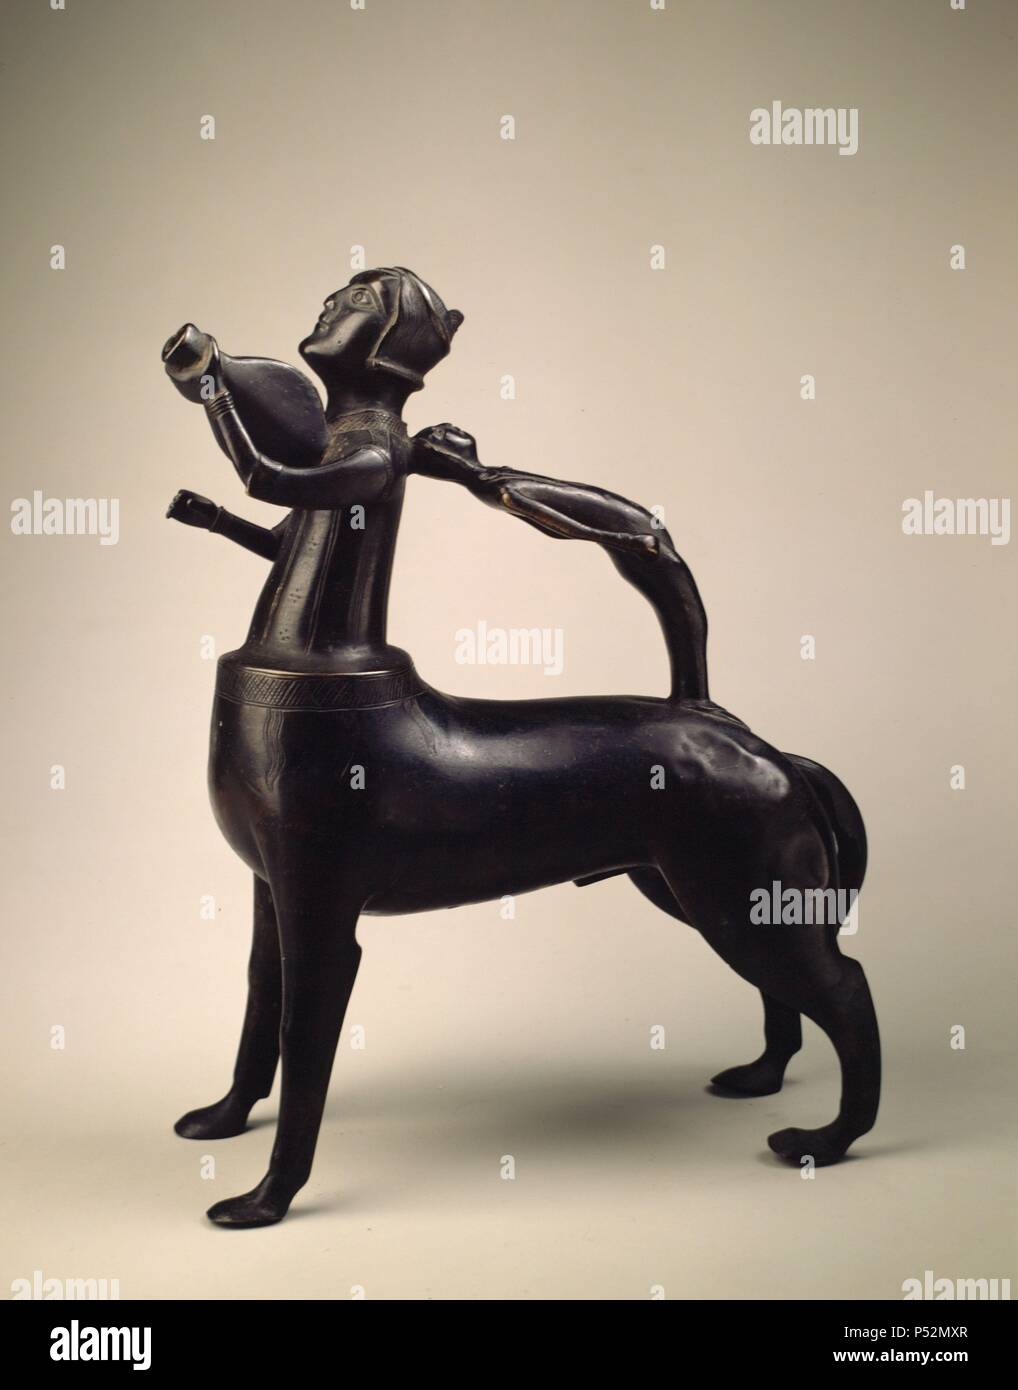 Madrid, M.A.N. 52851. Arte Edad Media.Aguamanil con forma de centauro tocando la viola. Bronce. s.XIV. Stock Photo